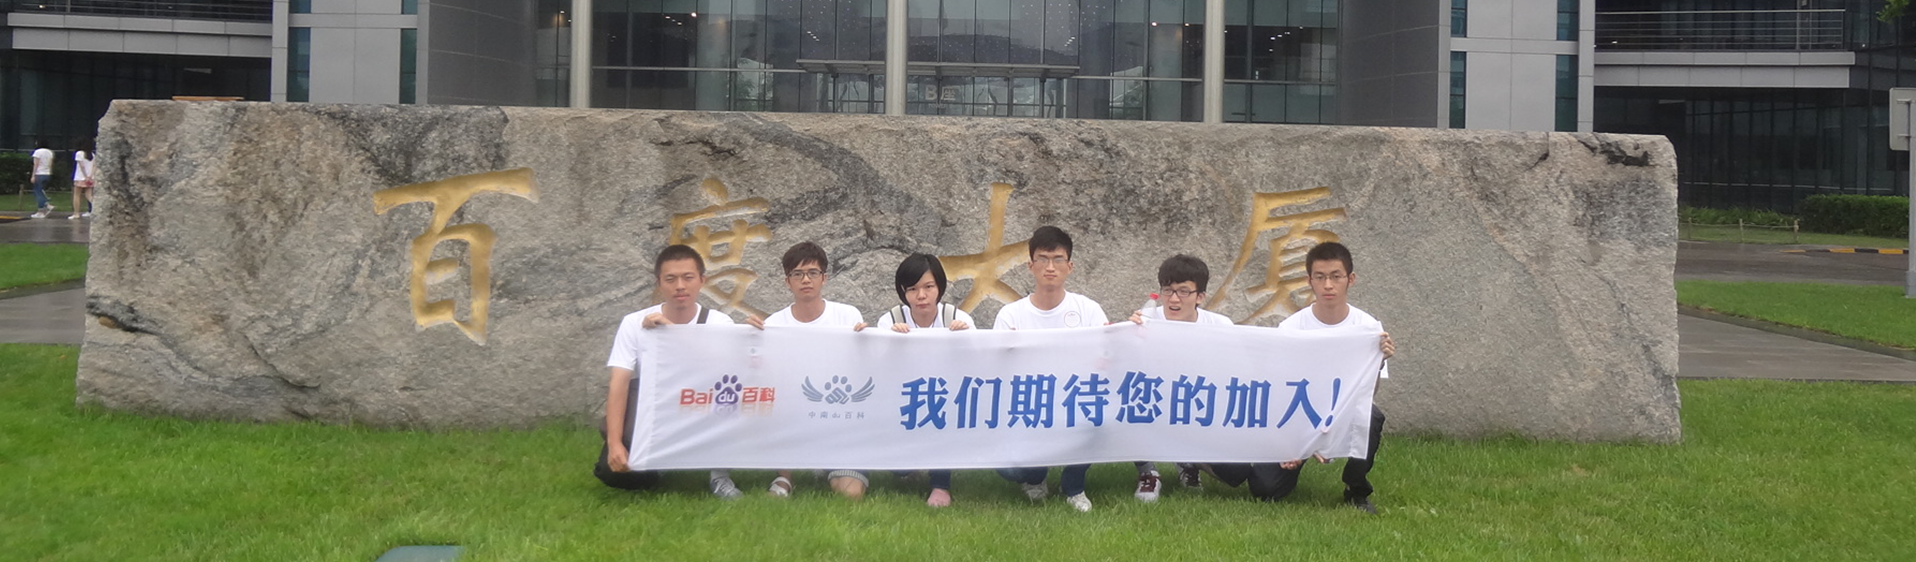 2013年夏令營受邀者於北京-百度大廈前合影